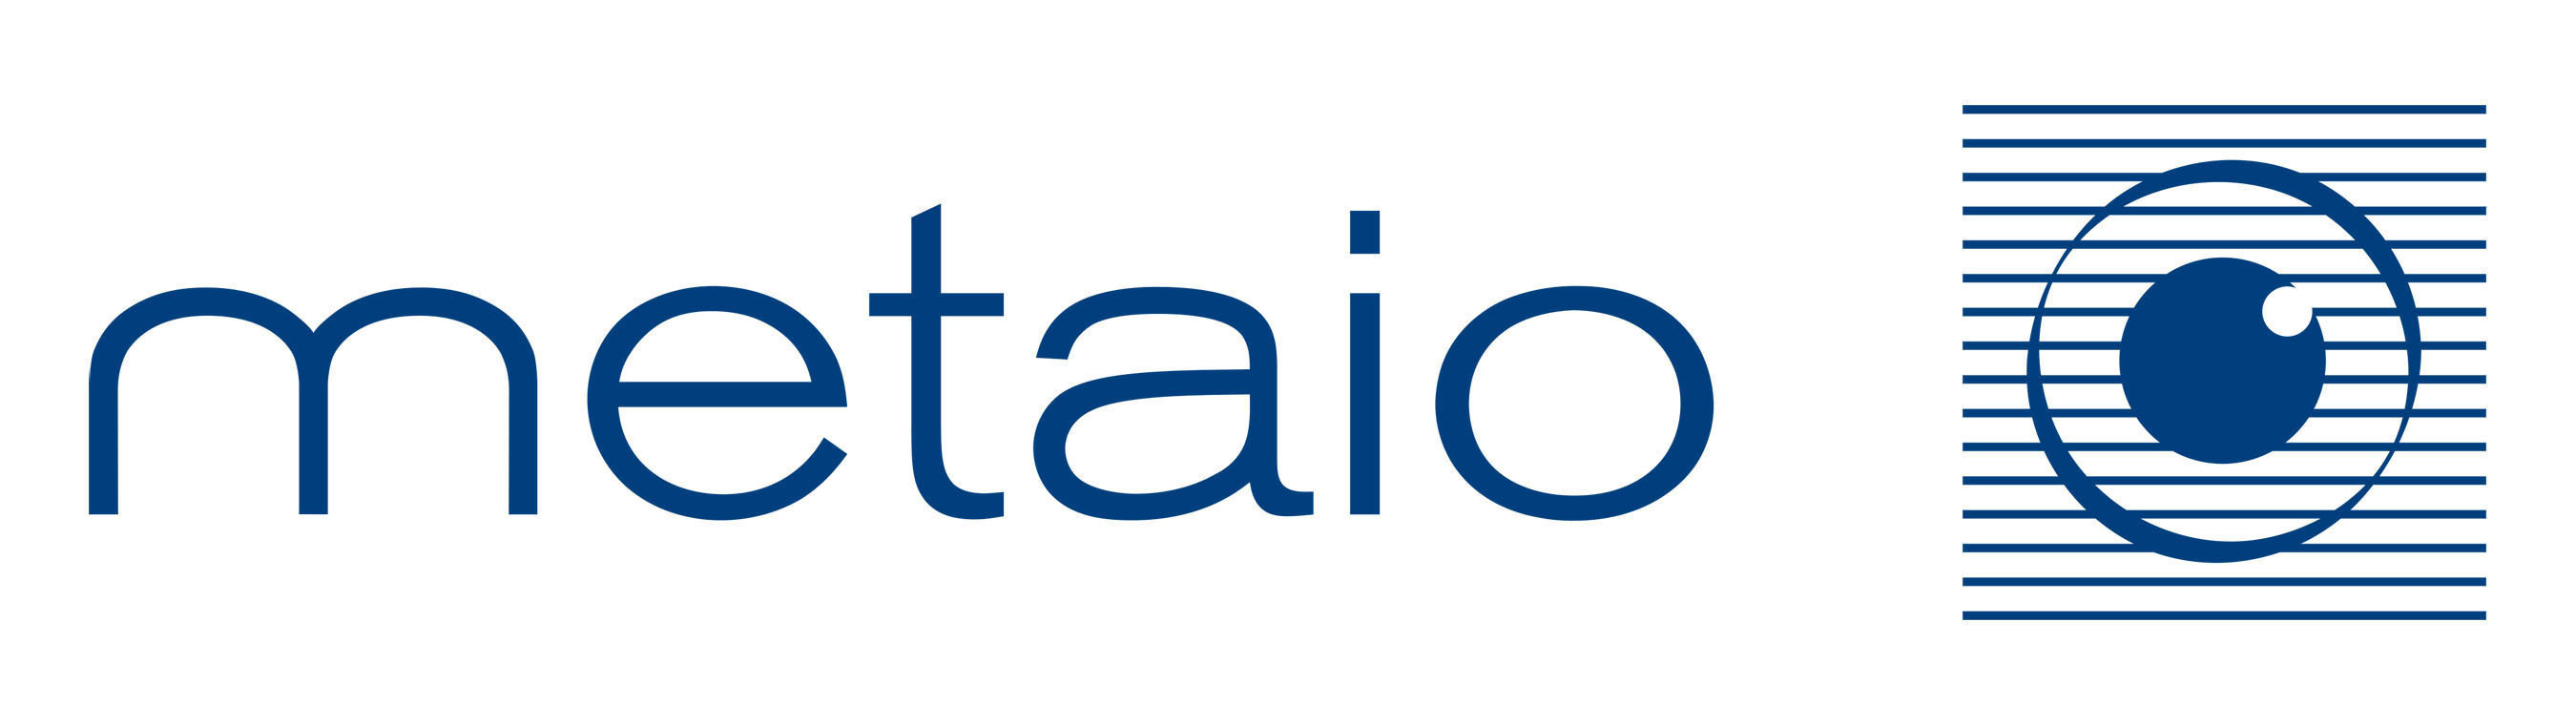 Metaio Logo. (PRNewsFoto/Metaio) (PRNewsFoto/METAIO)